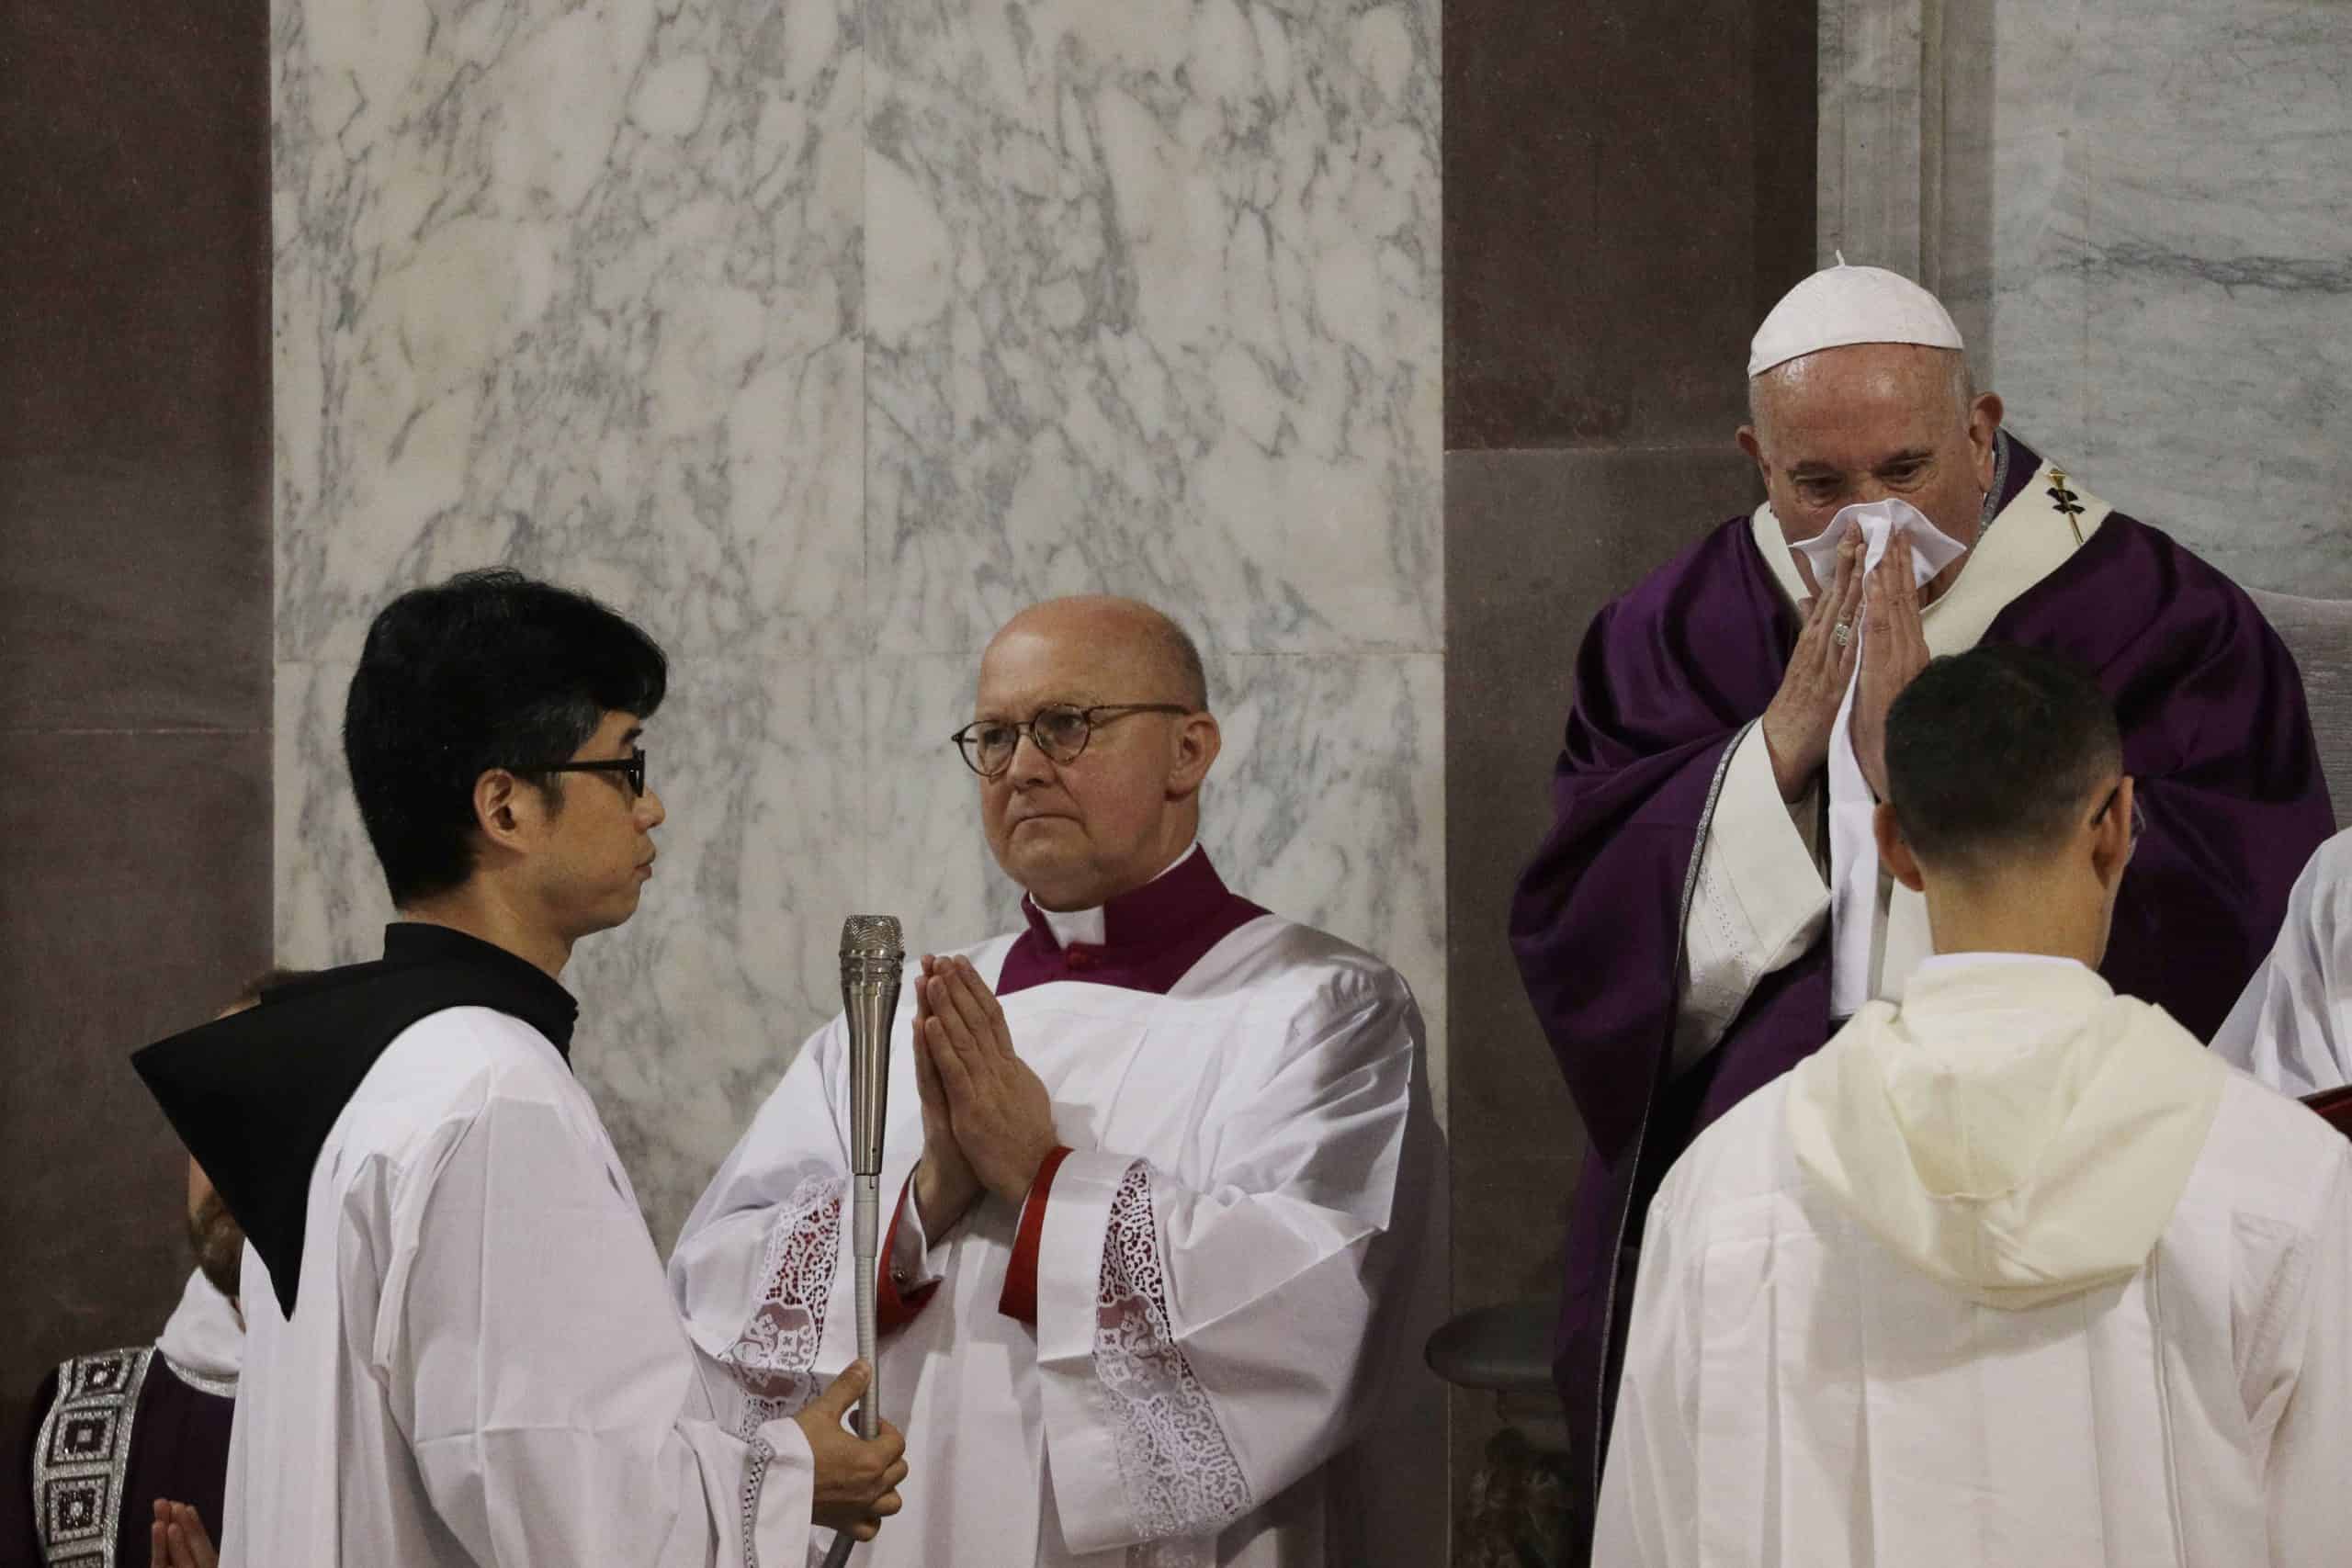 Ανησυχία στο Βατικανό με την υγεία του Πάπα: Τέλος στο χειροφίλημα – Αλλάζει ακόμα και η Θεία Κοινωνία